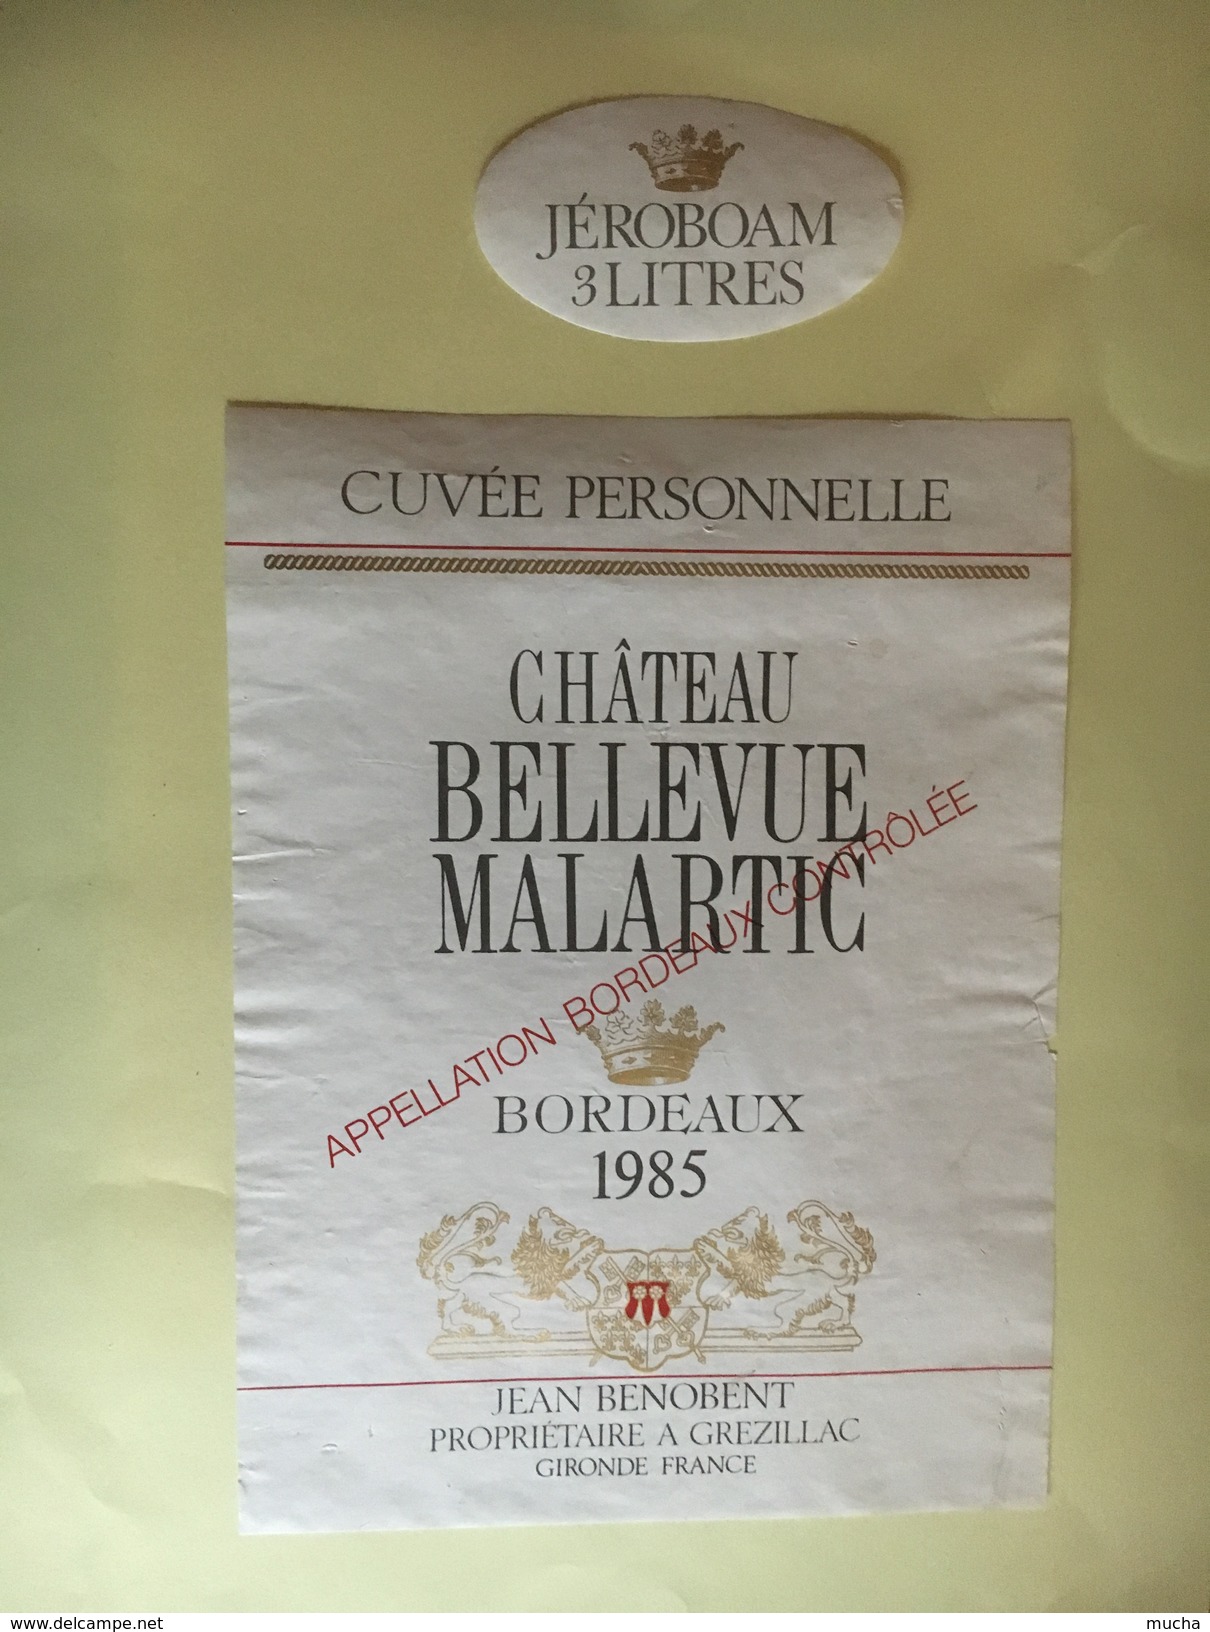 6082 -  Château Bellevue Malartic 1985 Czvée Personnelle Jéroboam 3 Litres - Bordeaux